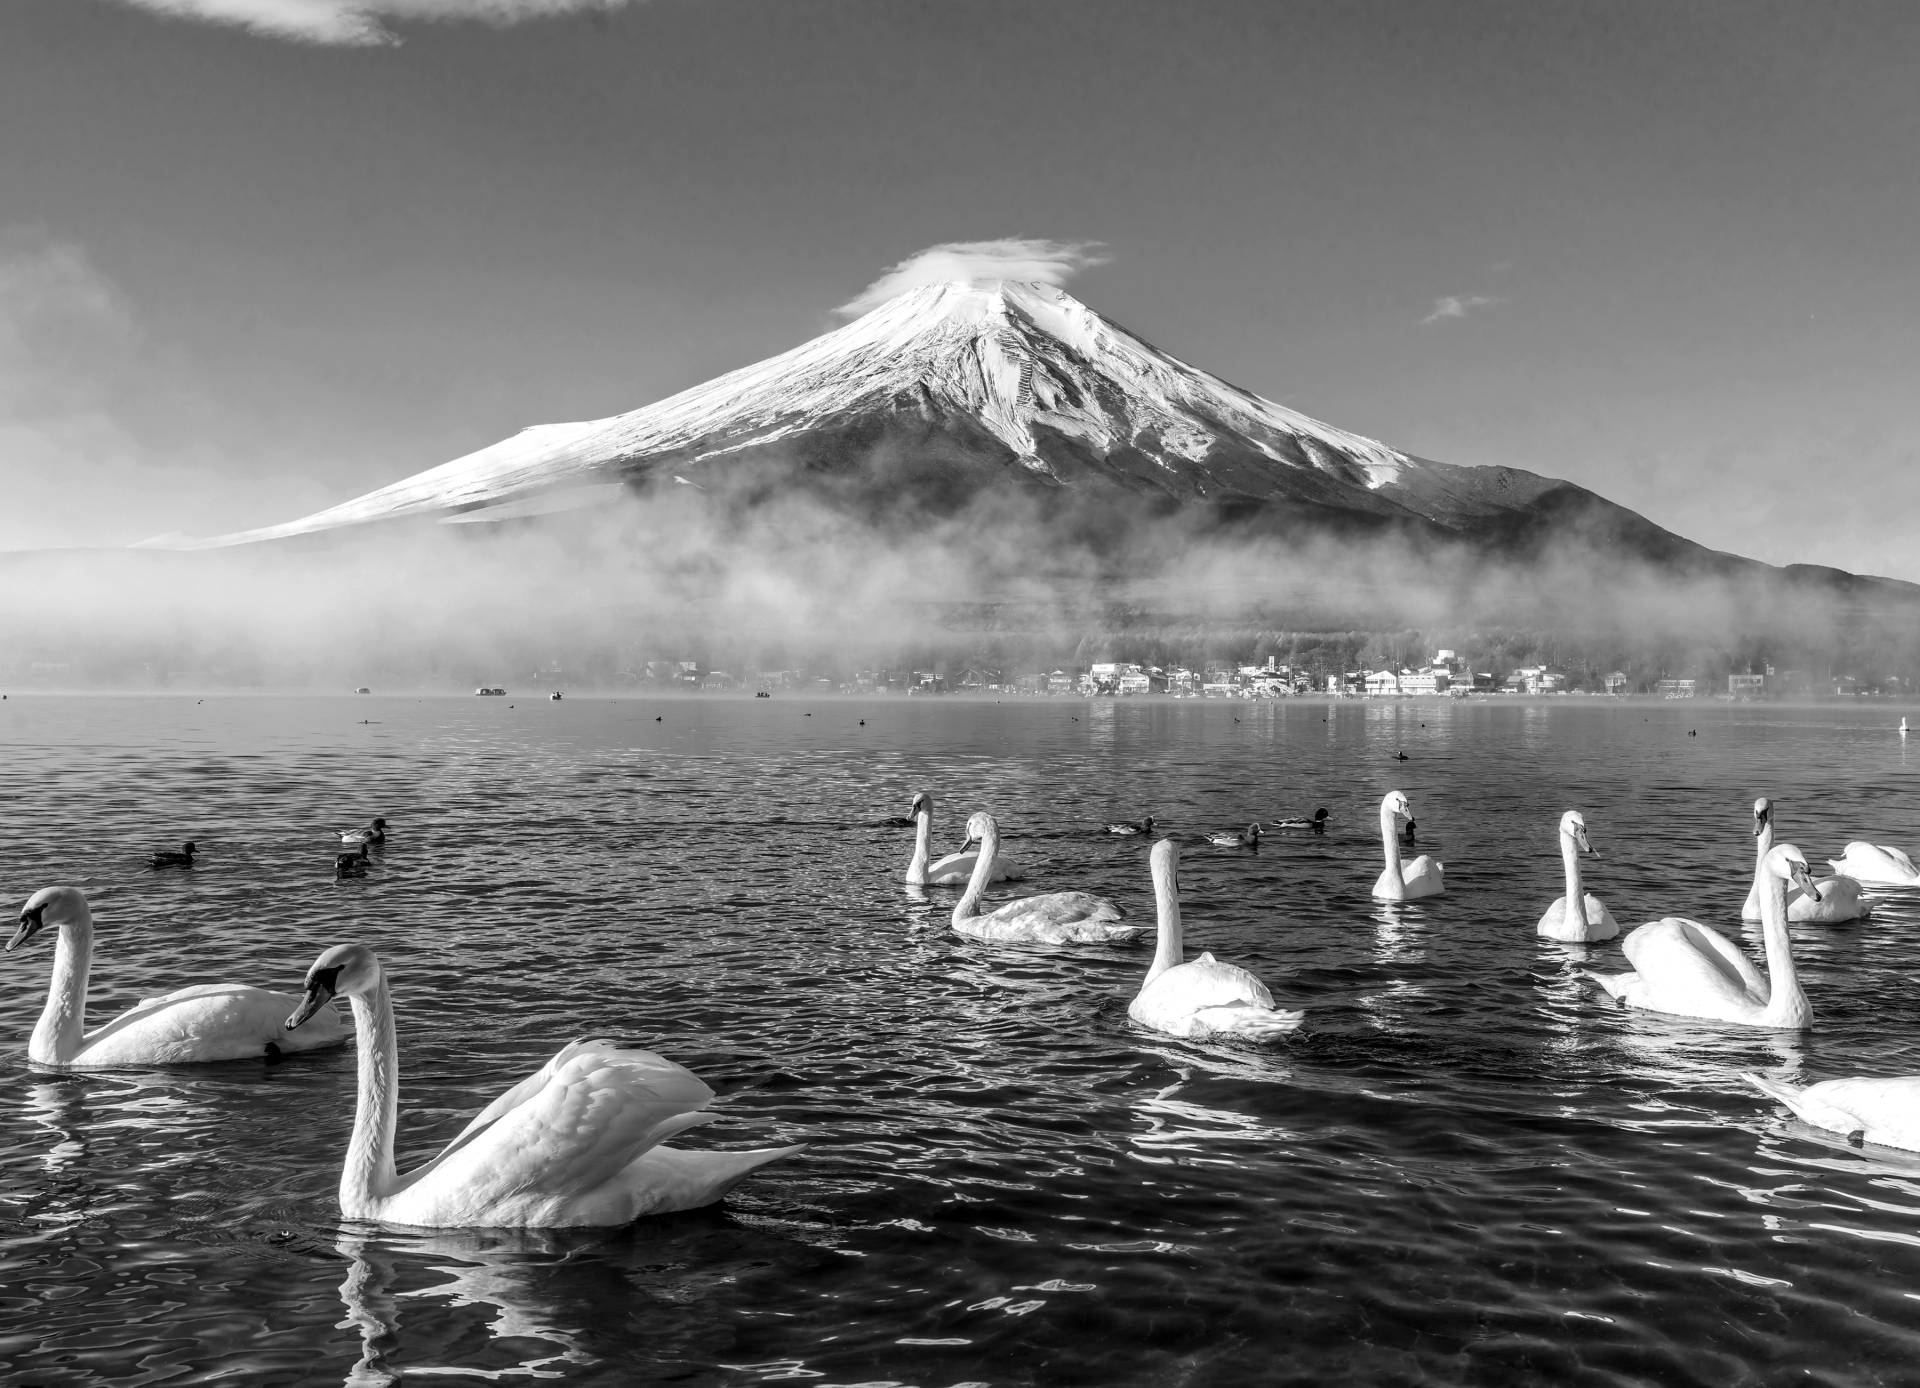 Papermoon Fototapete "Mount Fuji mit Schwänen Schwarz & Weiß" von Papermoon